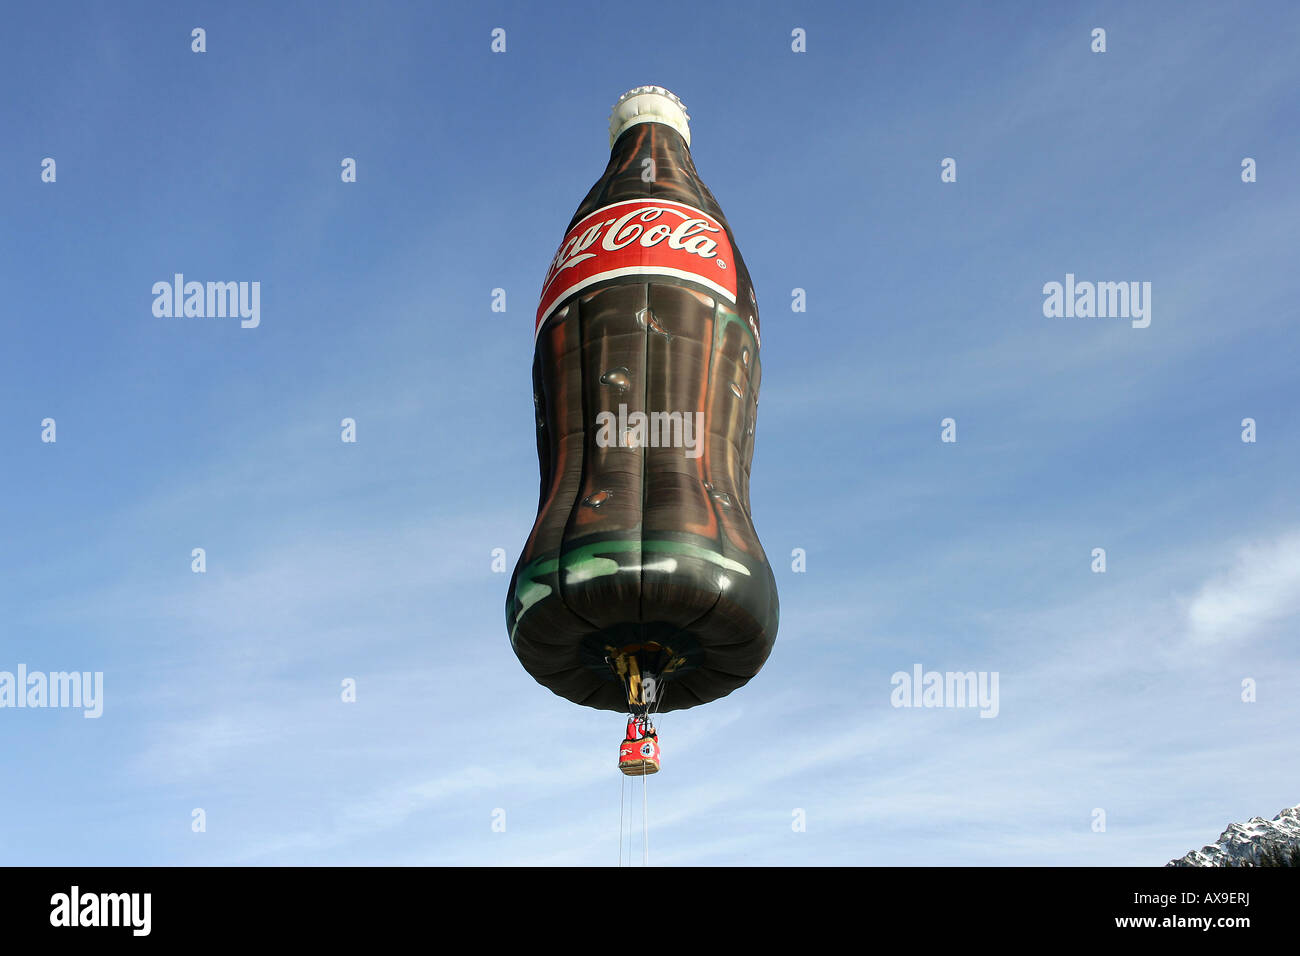 Hot-air balloon in the shape of a Coca-Cola bottle, Filzmoos, Austria Stock Photo